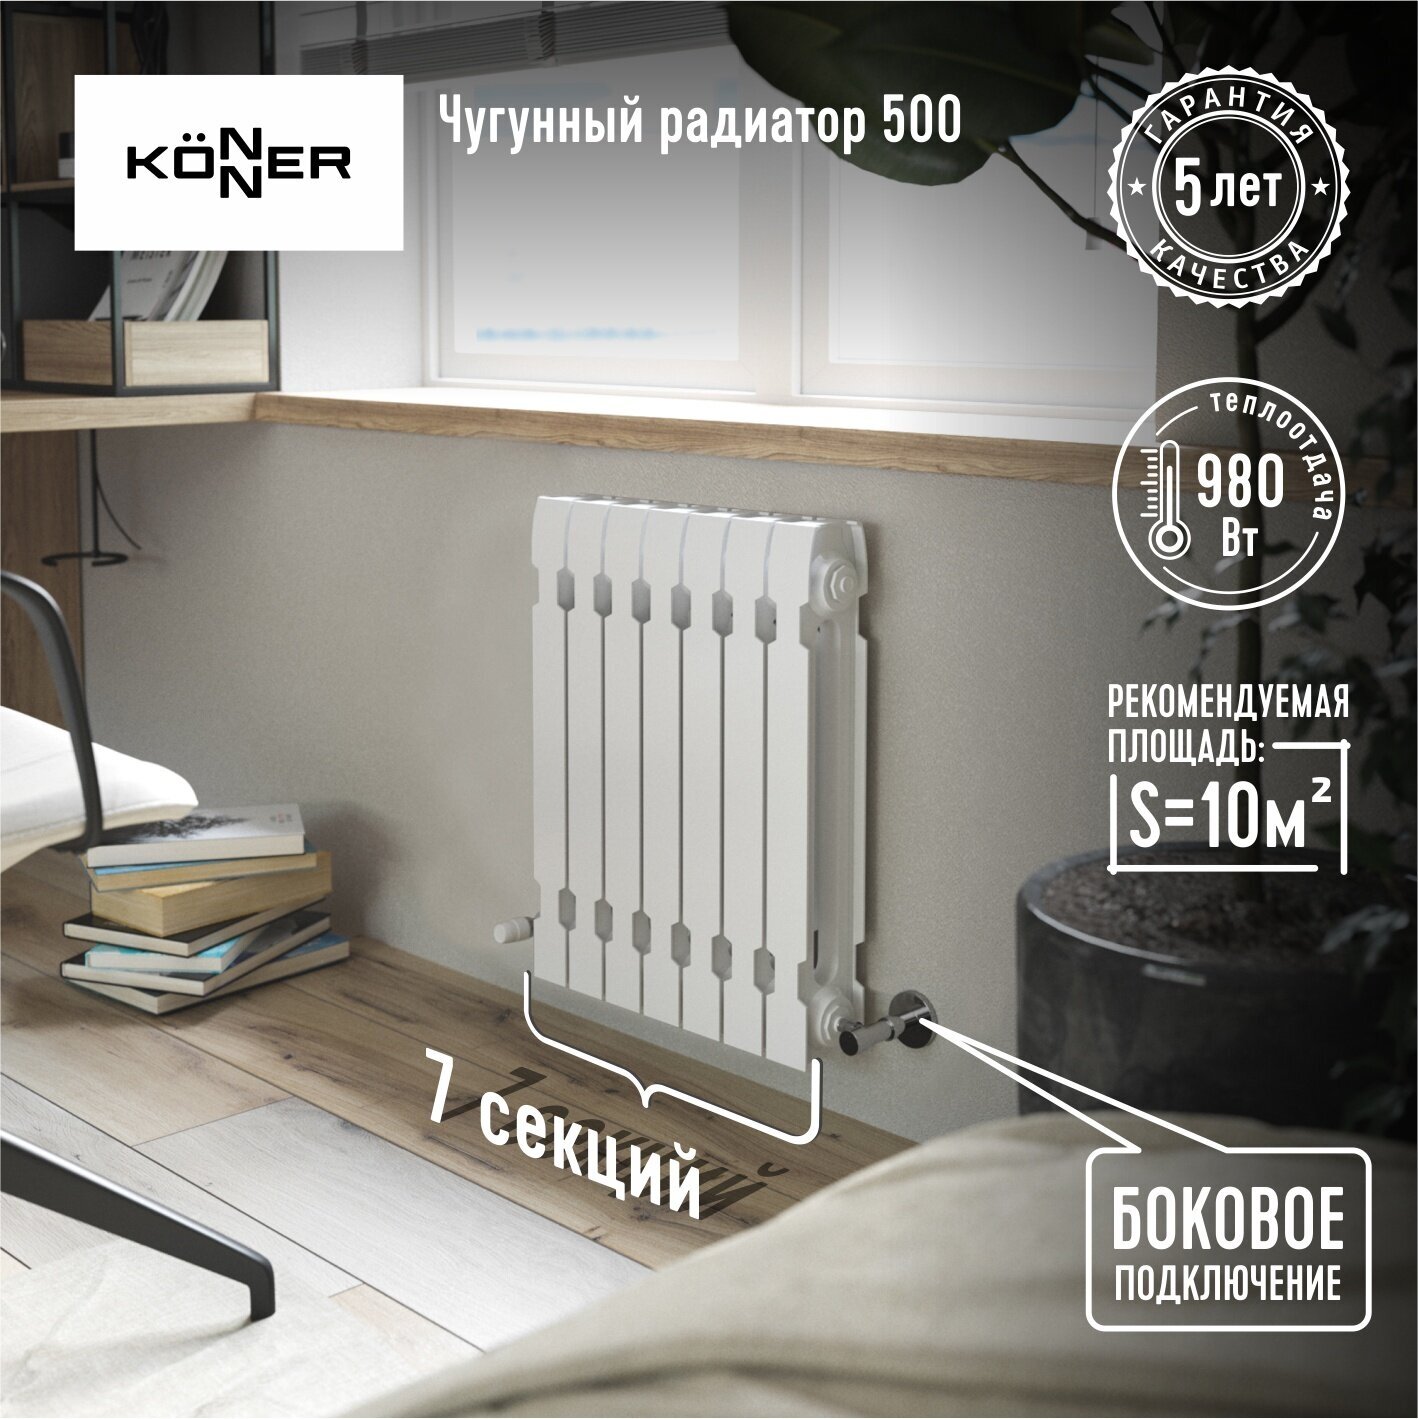 Радиатор секционный Konner Modern 500, кол-во секций: 7, 9.8 м2, 980 Вт, 420 мм.